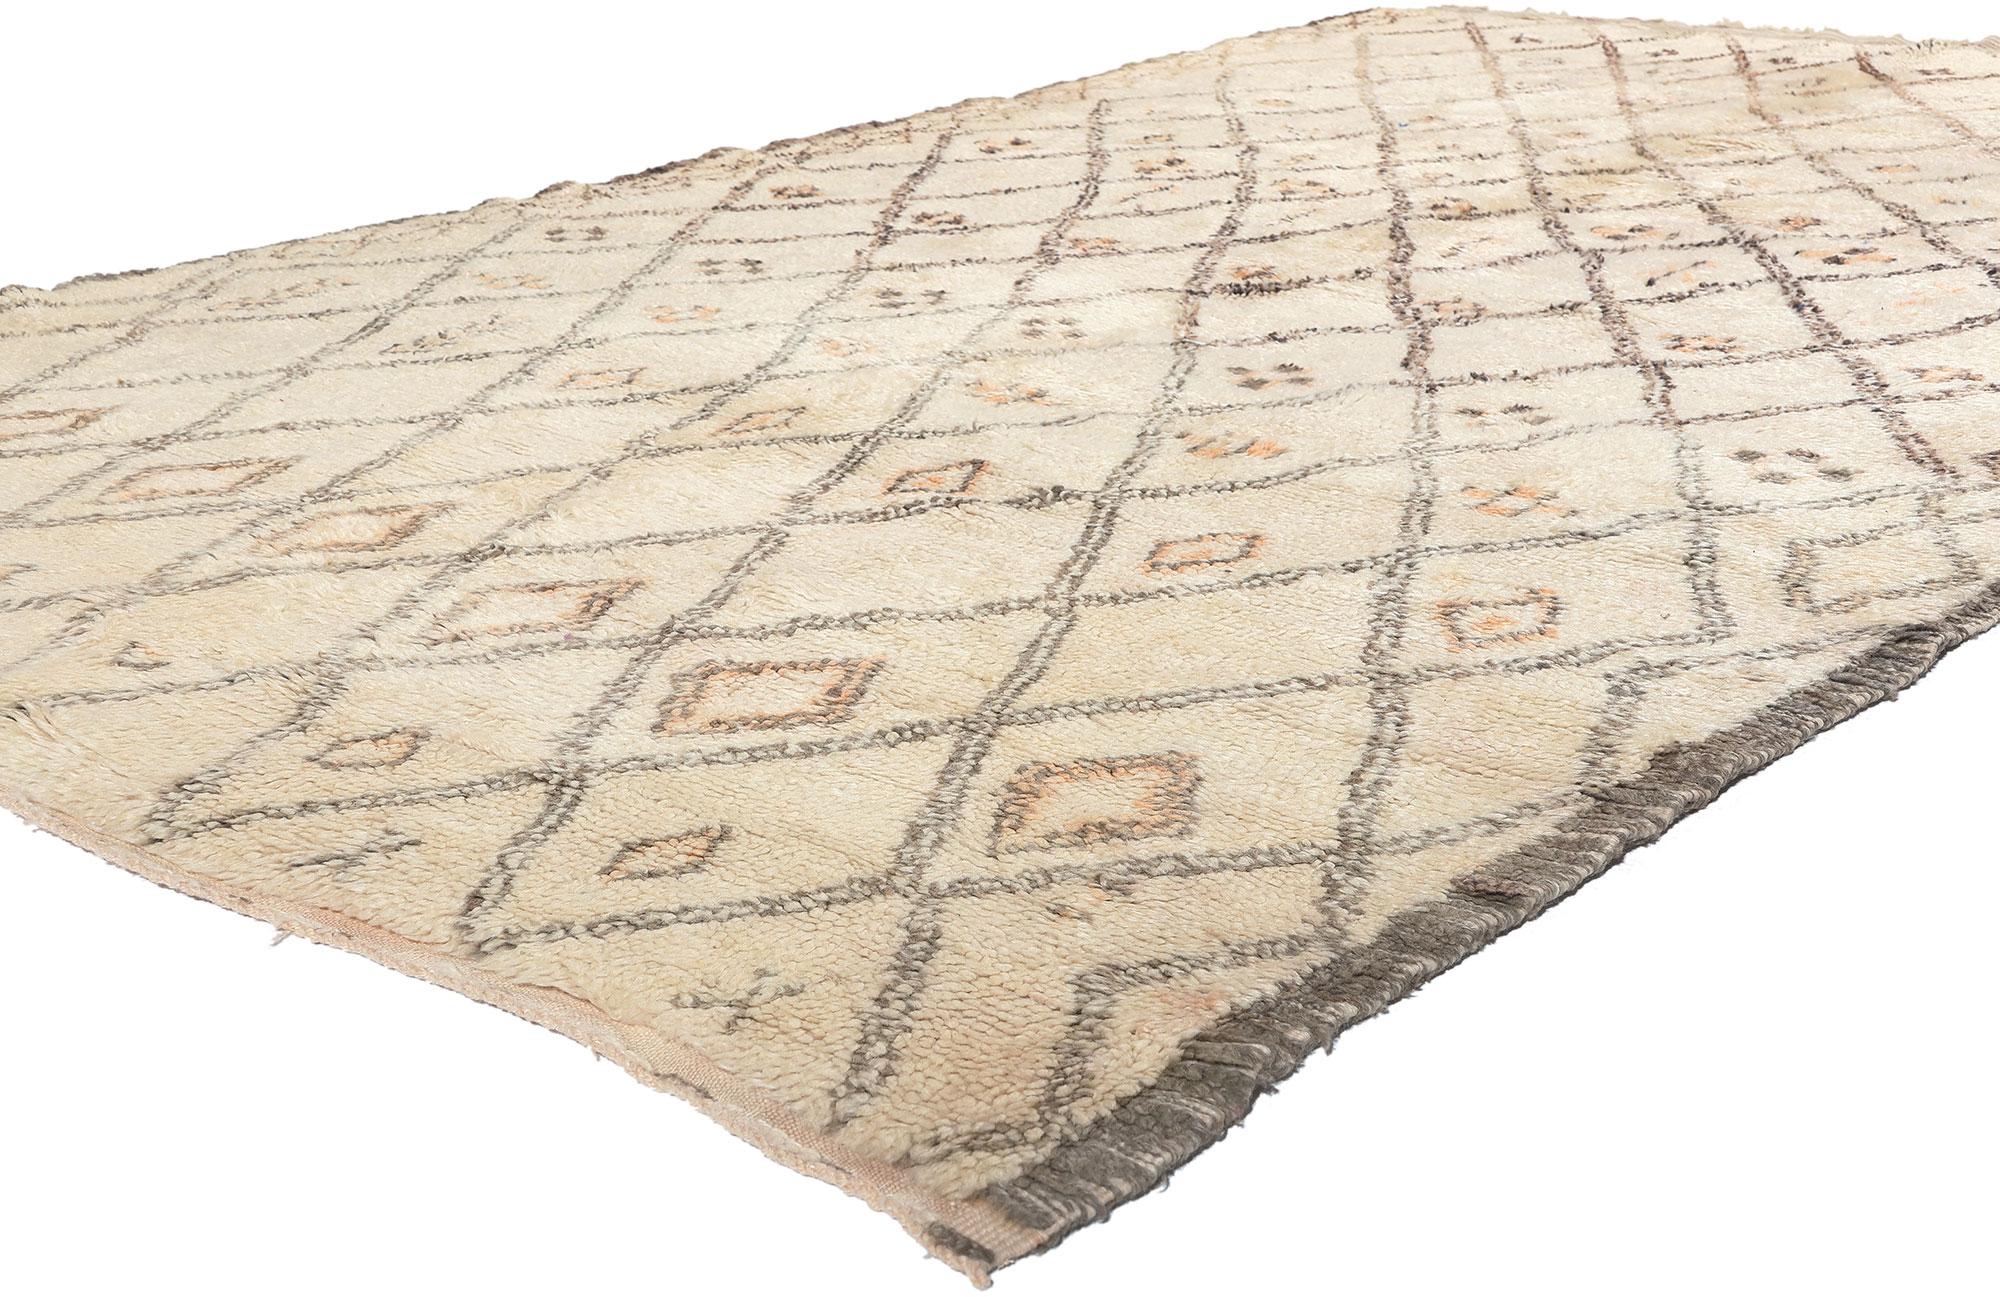 21400 Vintage Beni Ourain Marokkanischer Teppich, 05'07 x 09'09. Diese marokkanischen Teppiche, die aus dem reichen Erbe des Beni Ourain-Stammes, einem integralen Teil der vielfältigen Berber-Ethnie Marokkos, hervorgegangen sind, werden sorgfältig